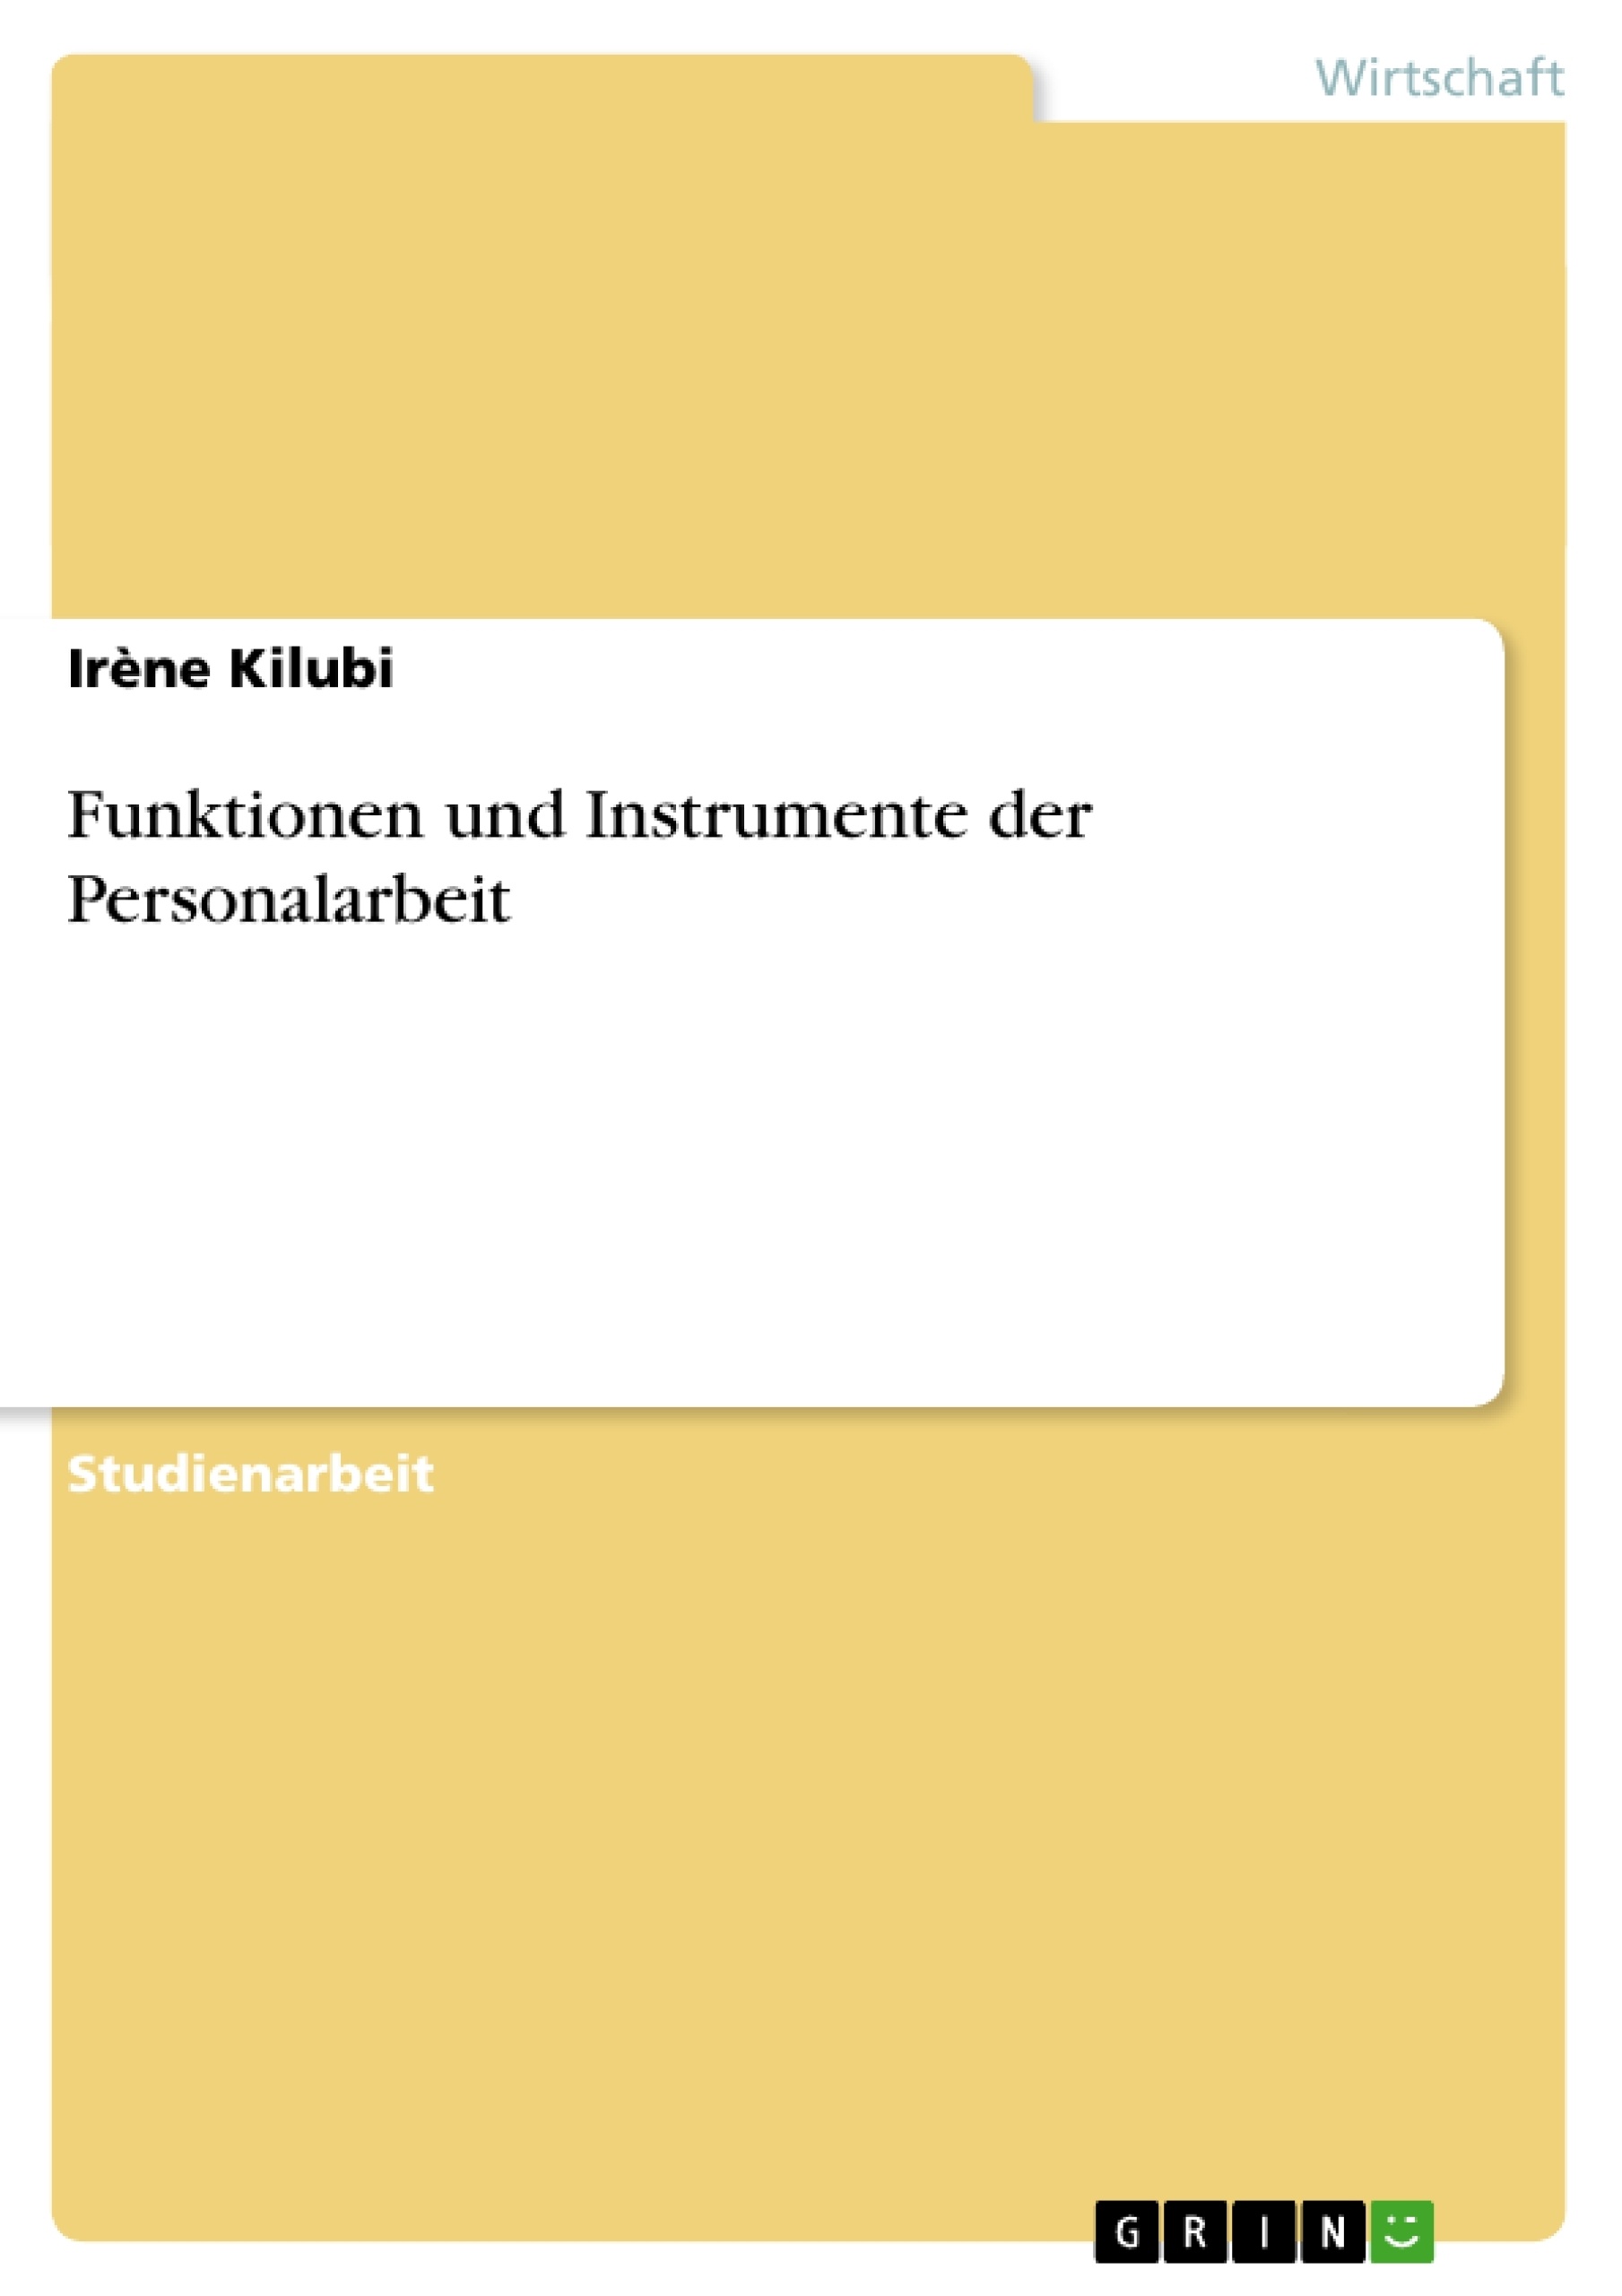 Title: Funktionen und Instrumente der Personalarbeit